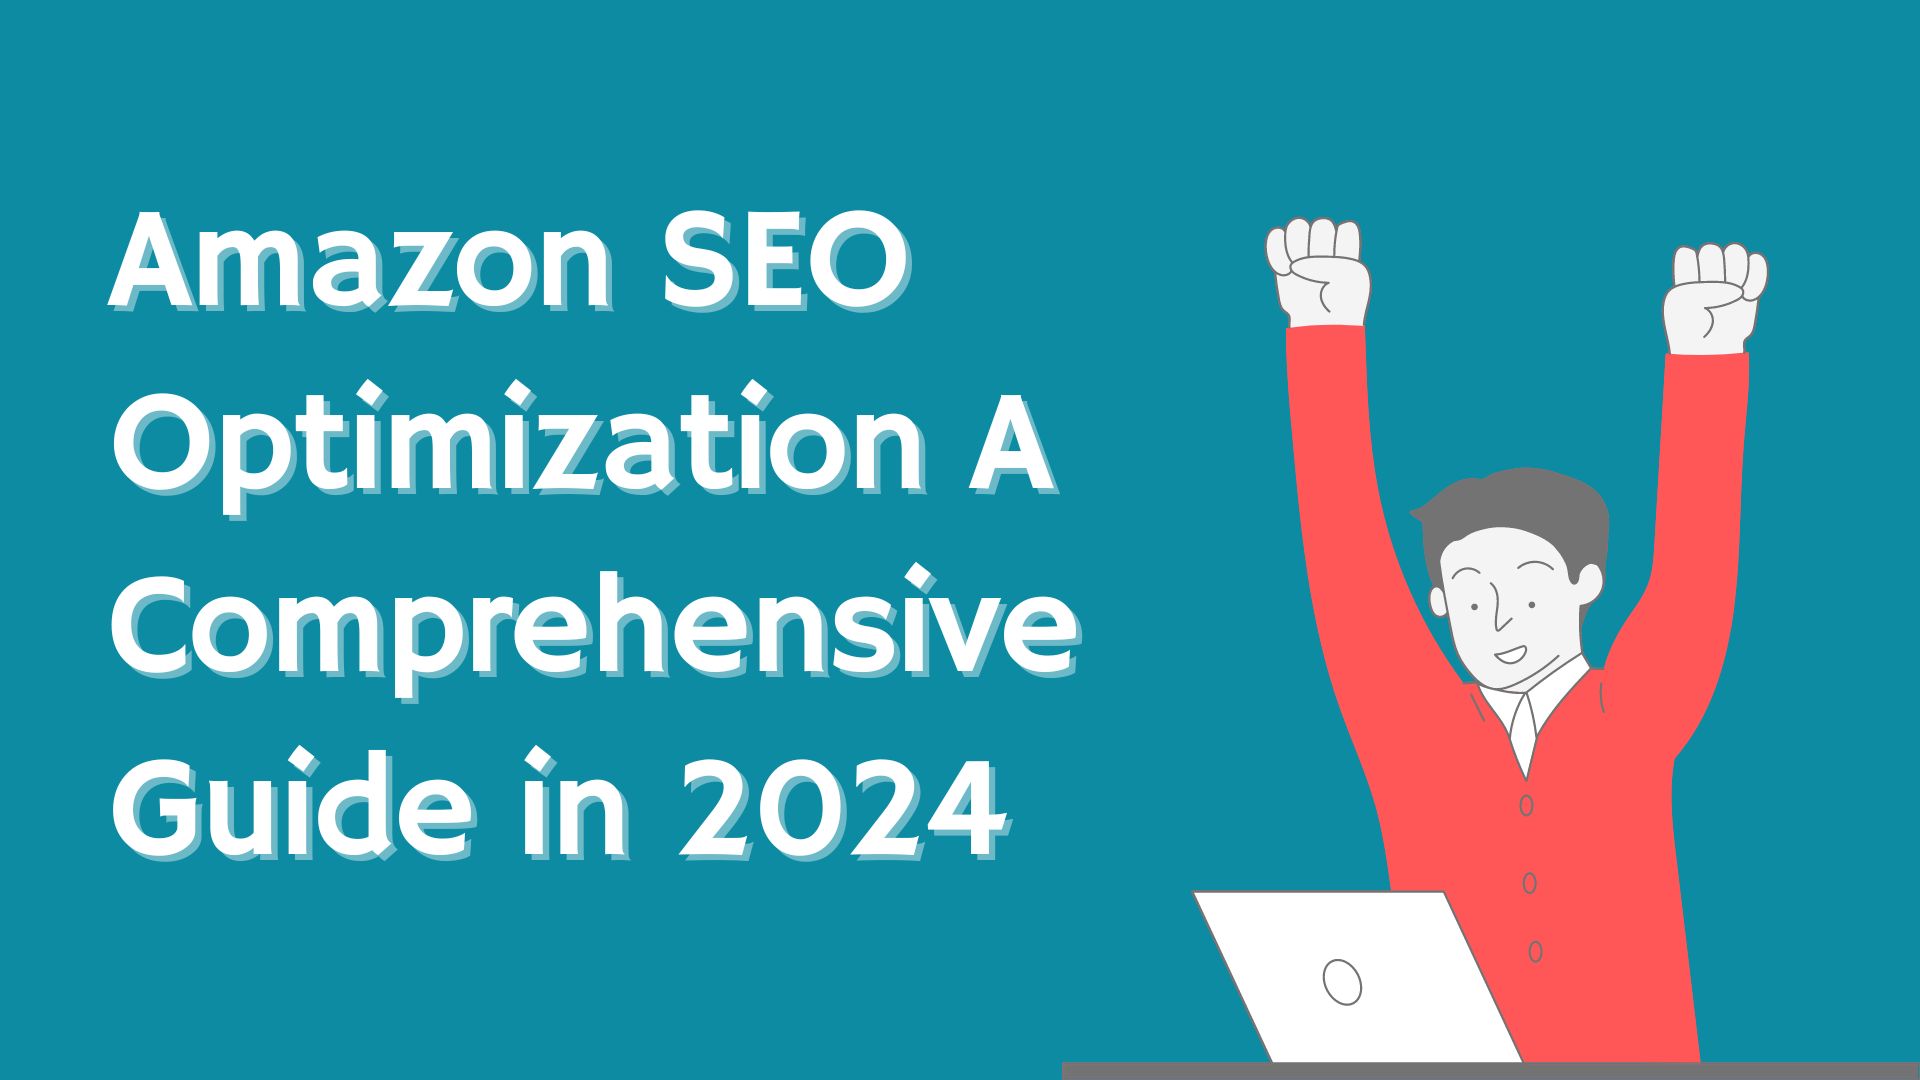 Amazon SEO Optimization - A Comprehensive Guide in 2024